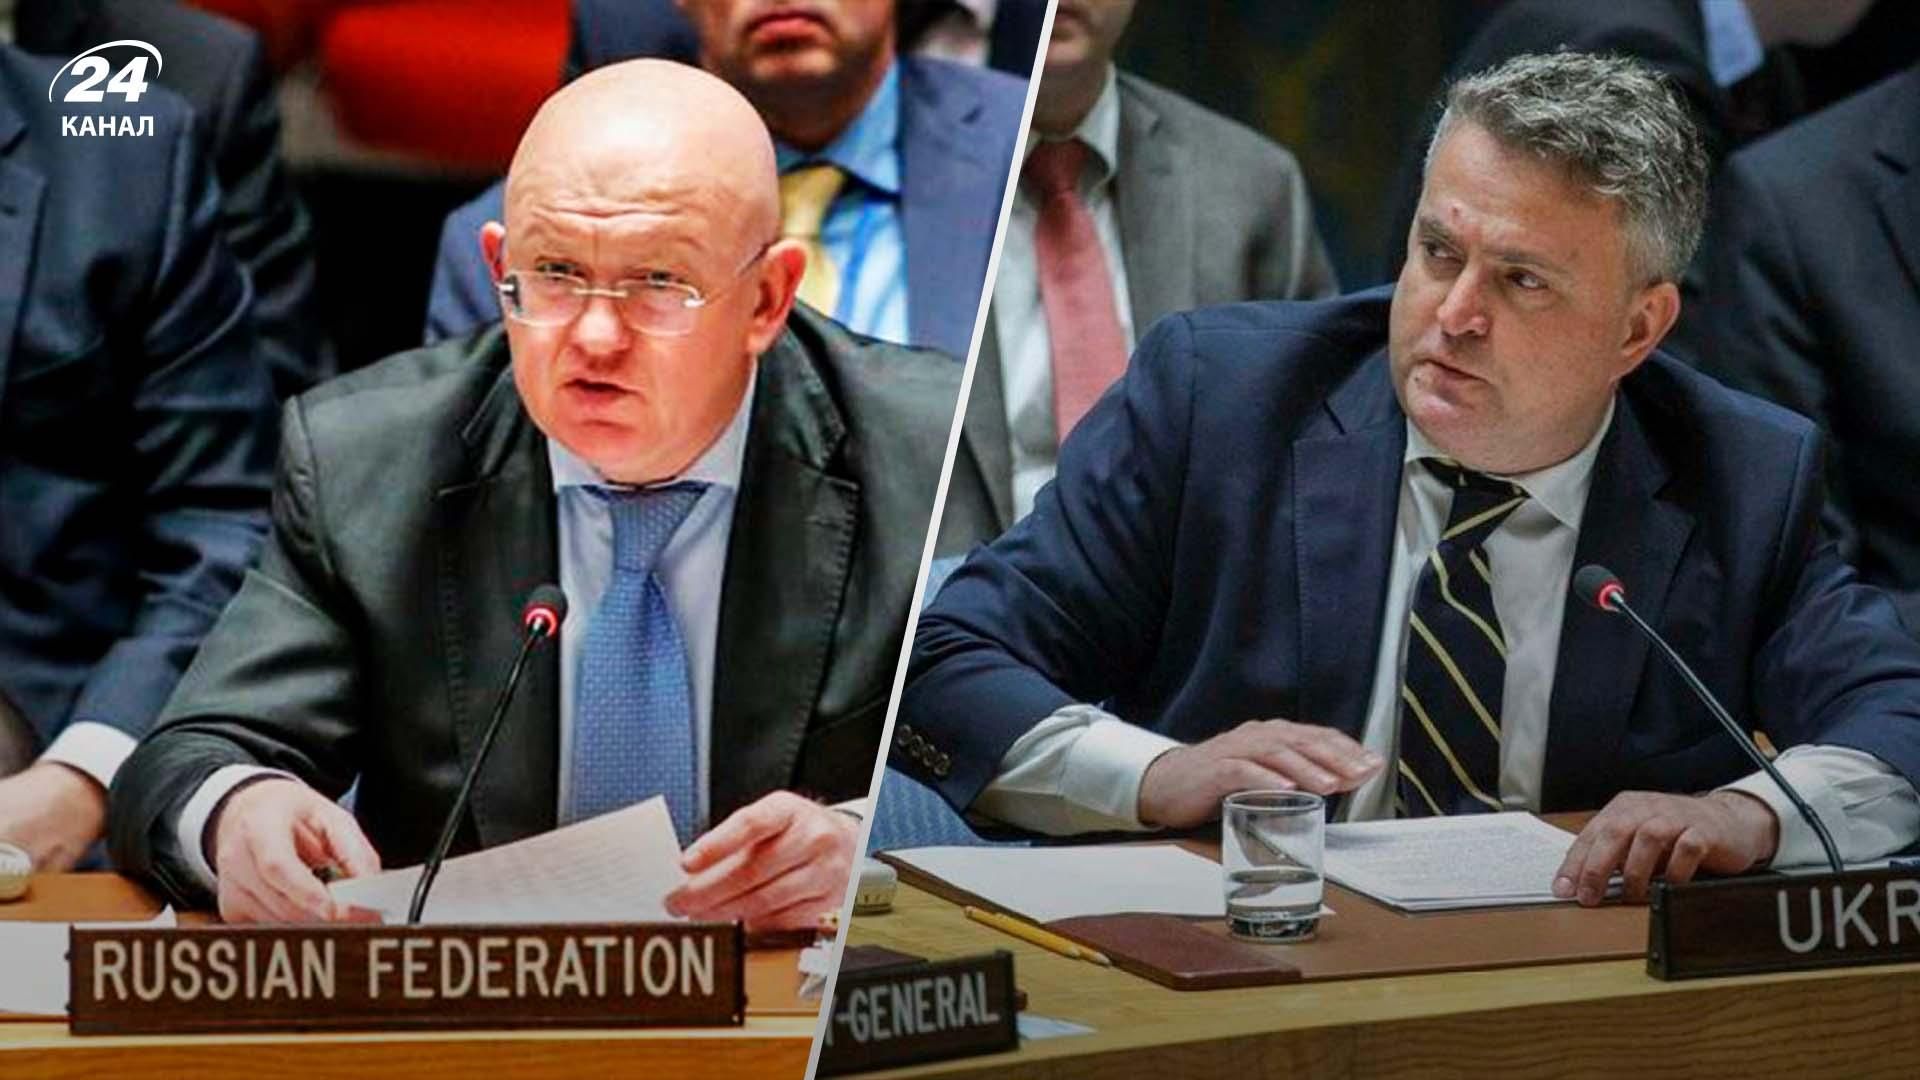 Спикер дьявола, – Кислица мастерски развенчивает фейки своего российского "коллеги" в ООН